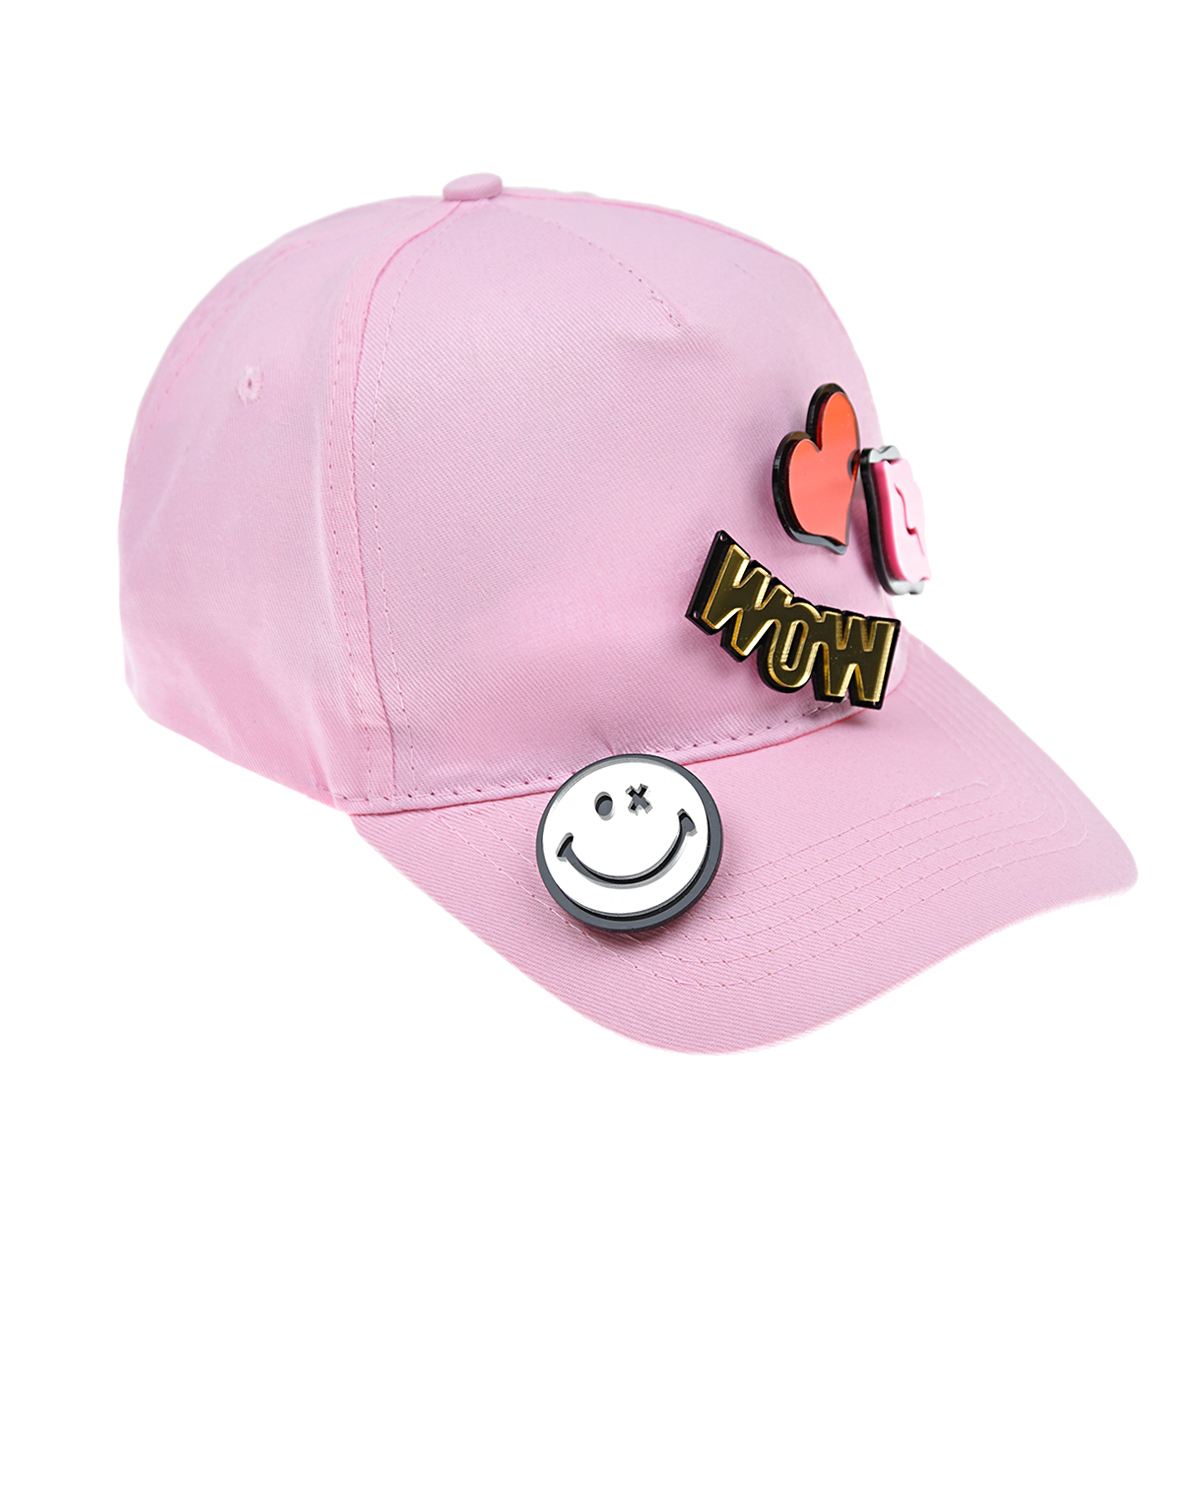 Розовая кепка с патчем WOW Regina детская, размер 56, цвет розовый